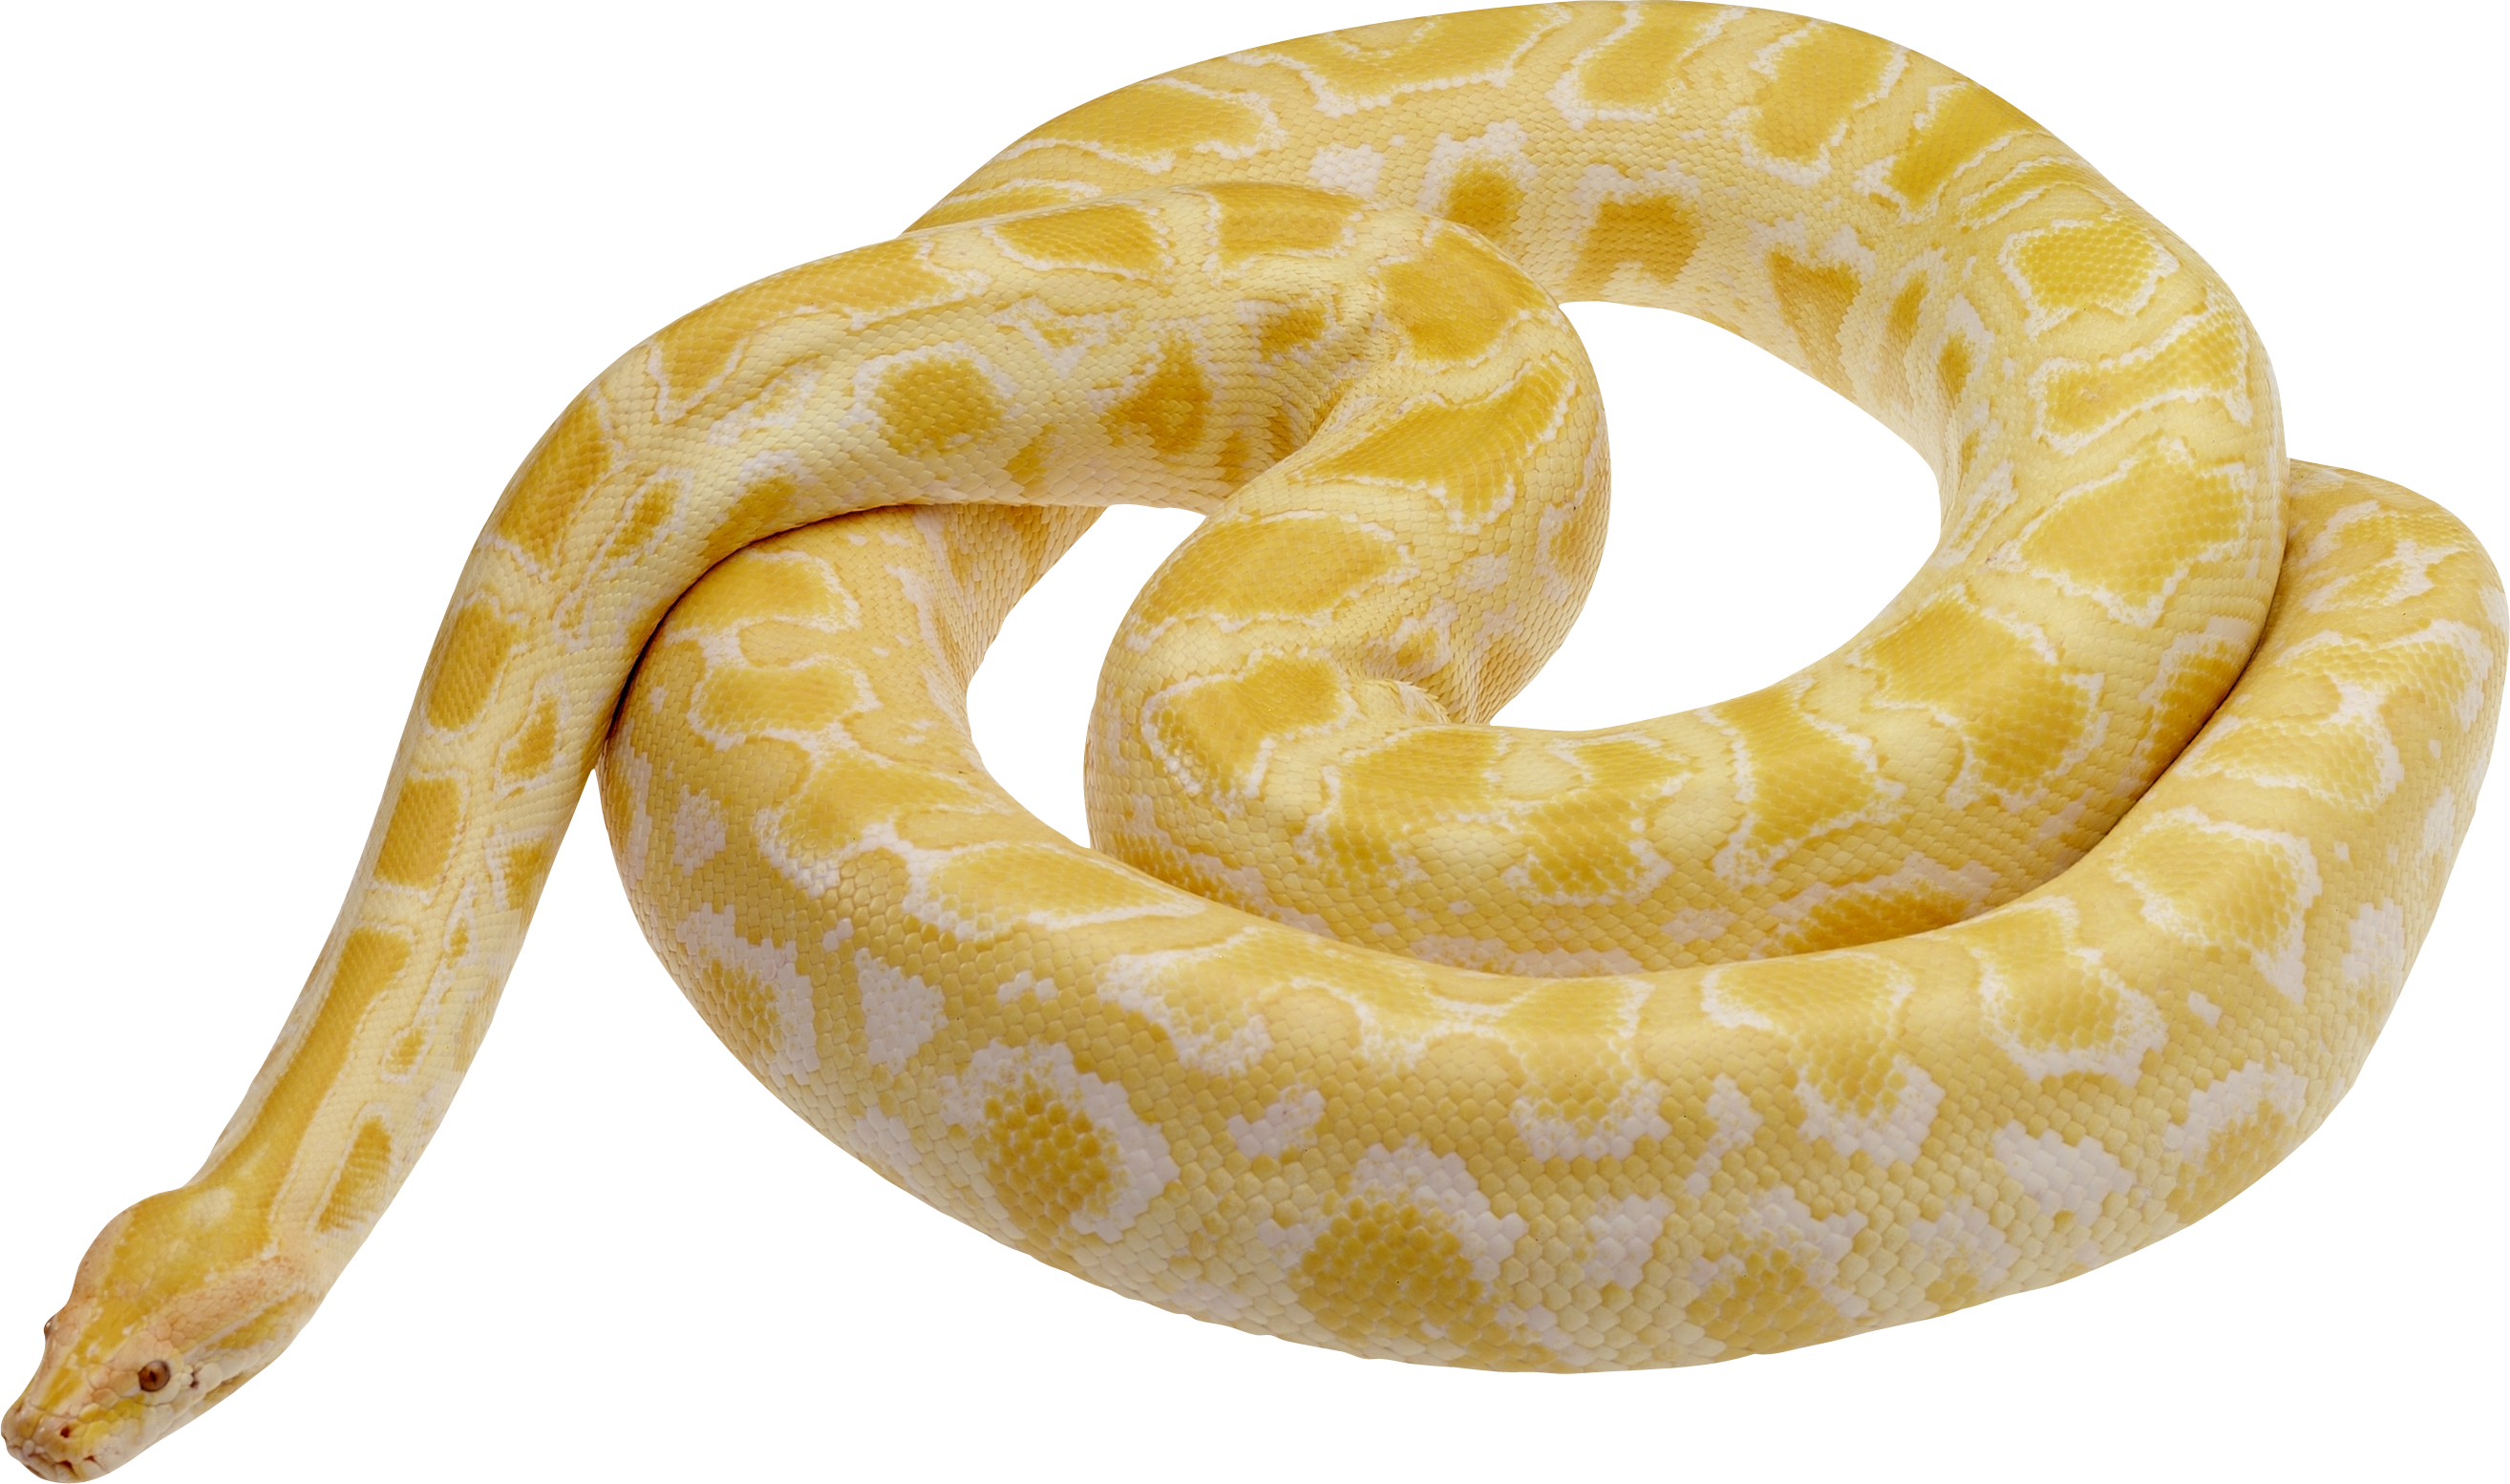 Viper Snake Transparent Images